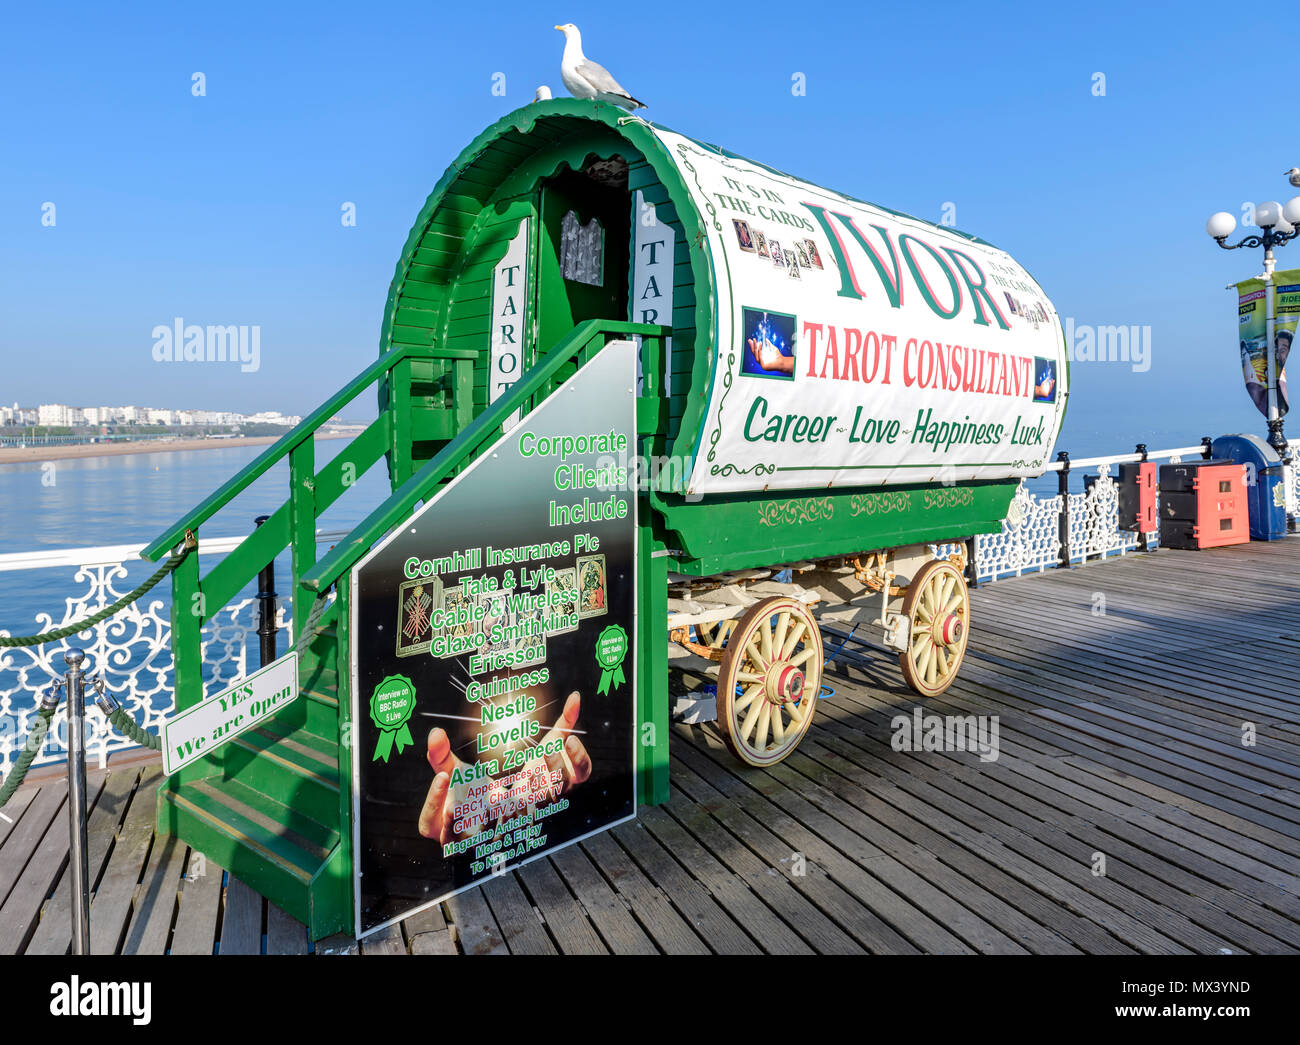 Ivor la carta dei tarocchi consulenti caravan sul molo di Brighton Foto Stock